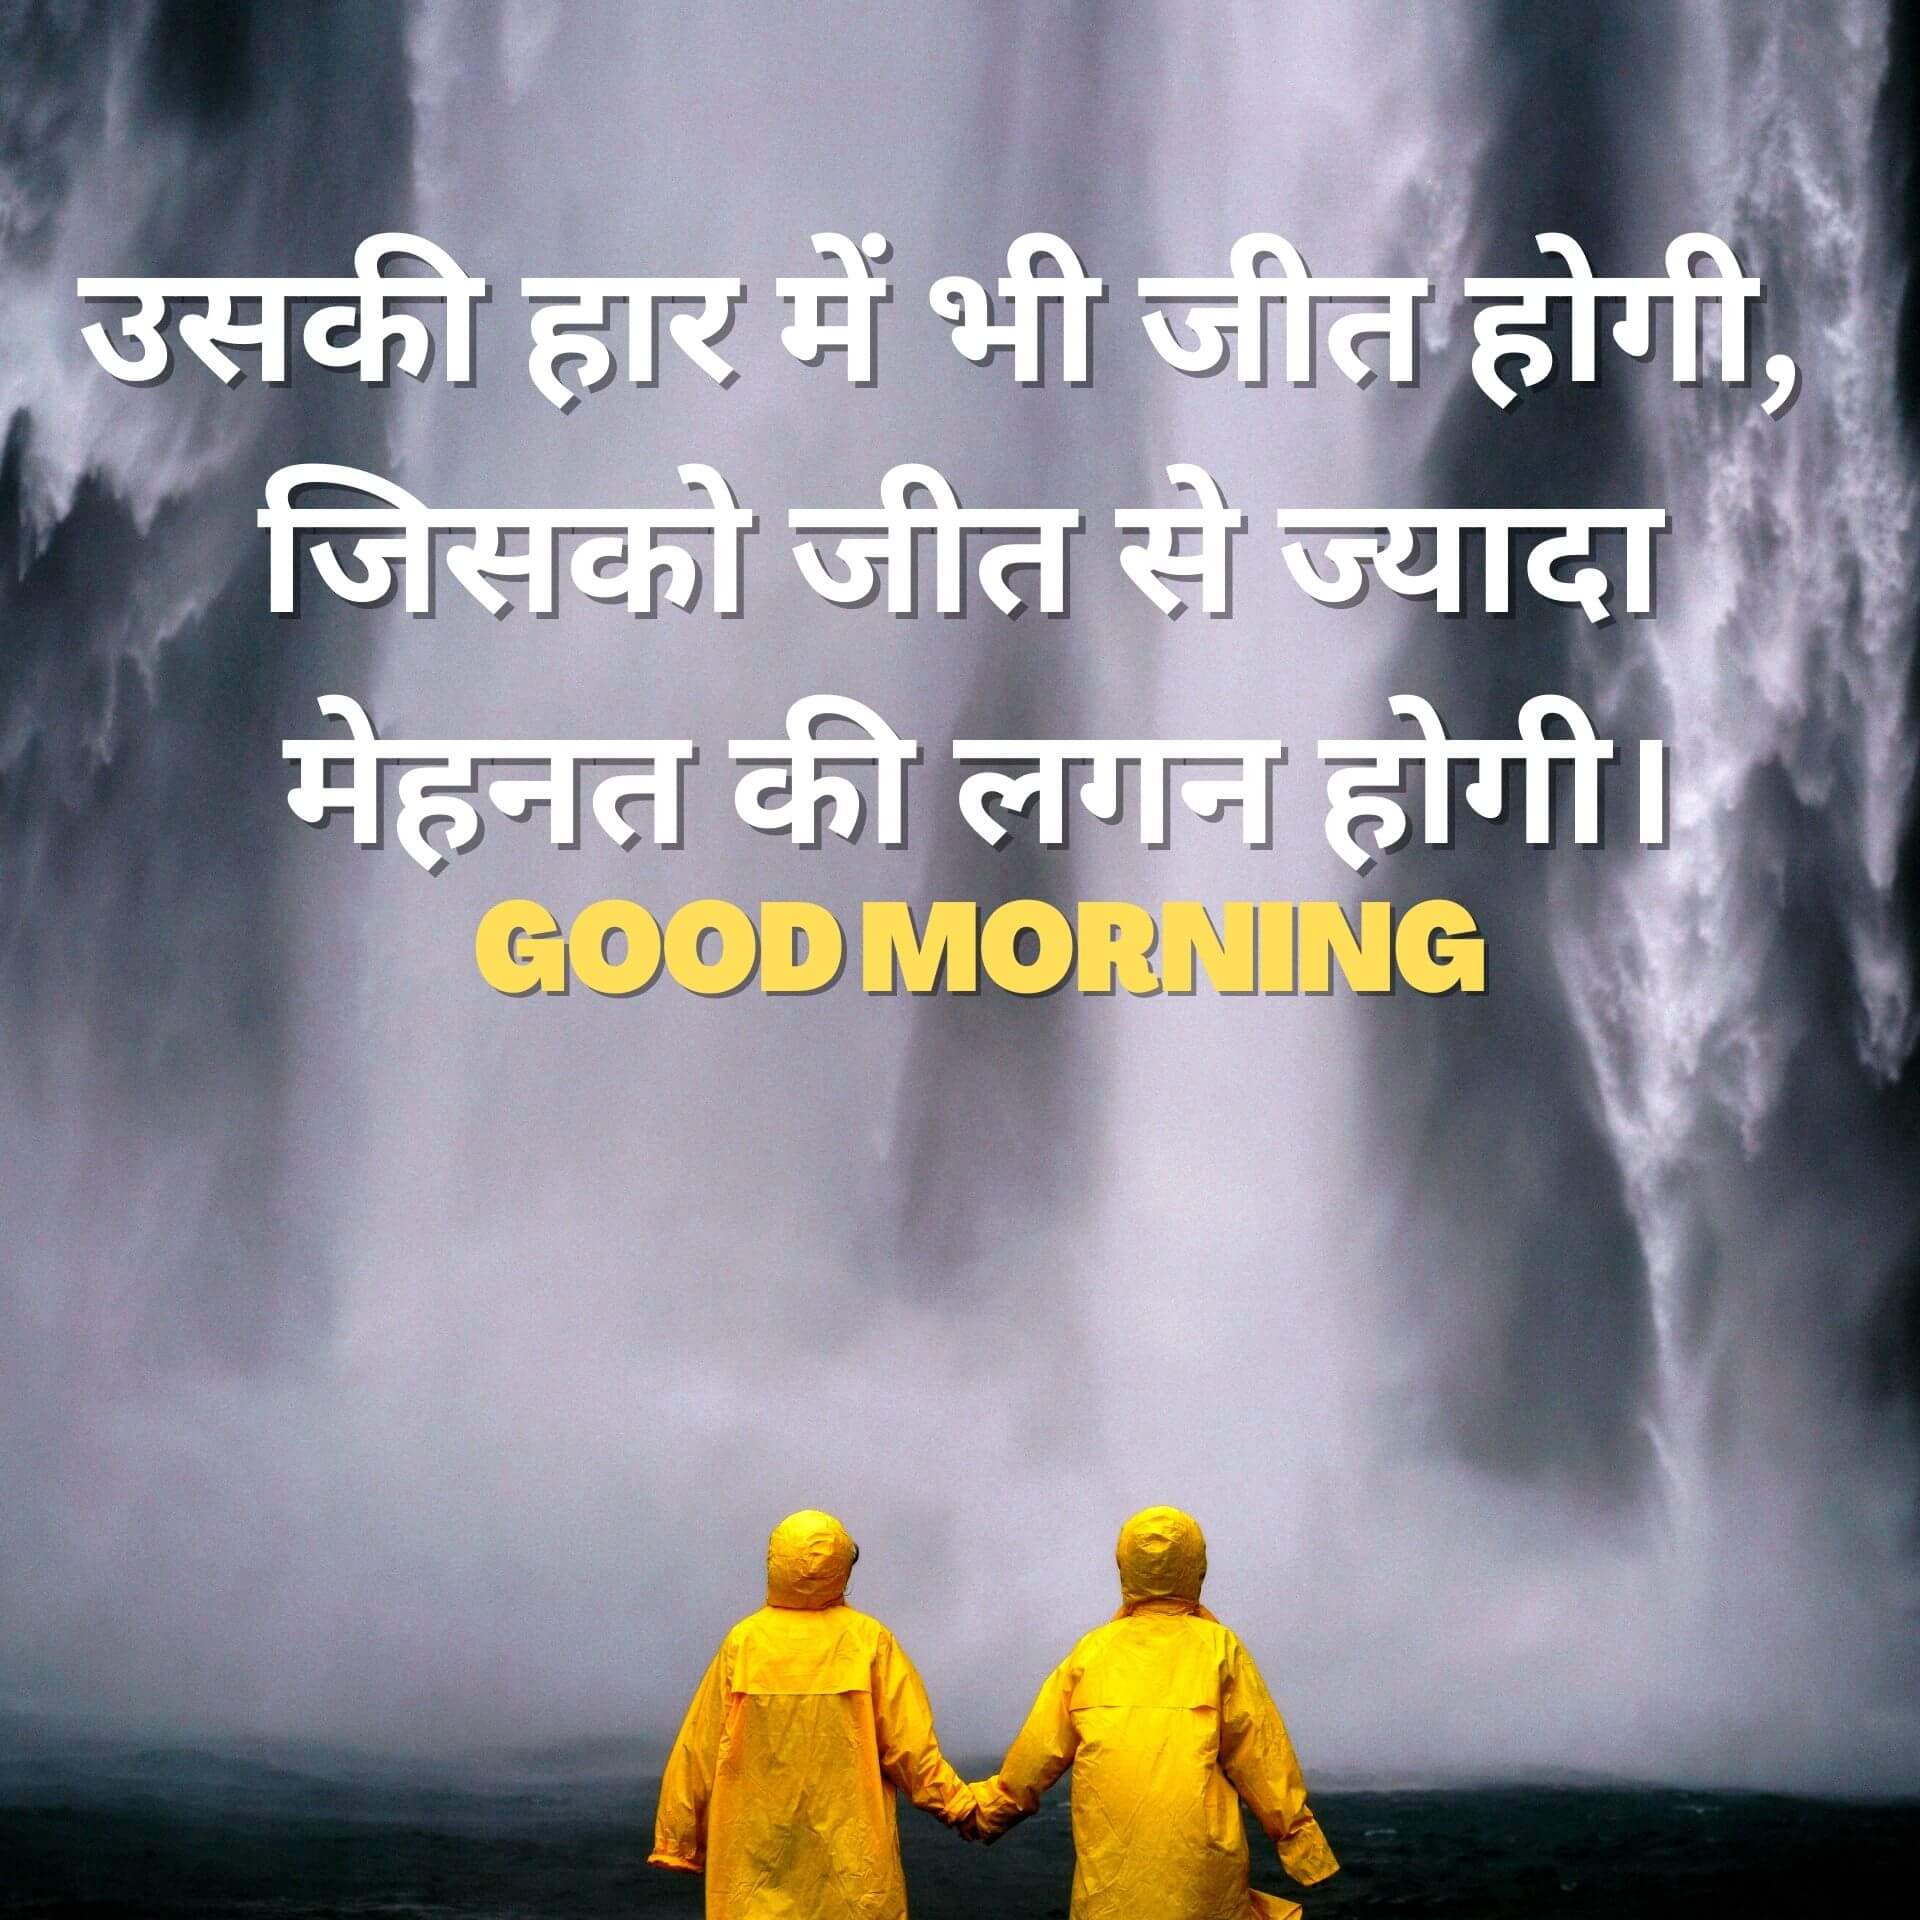 642+ Hindi Good Morning Images Wallpaper Pics For Whatsapp